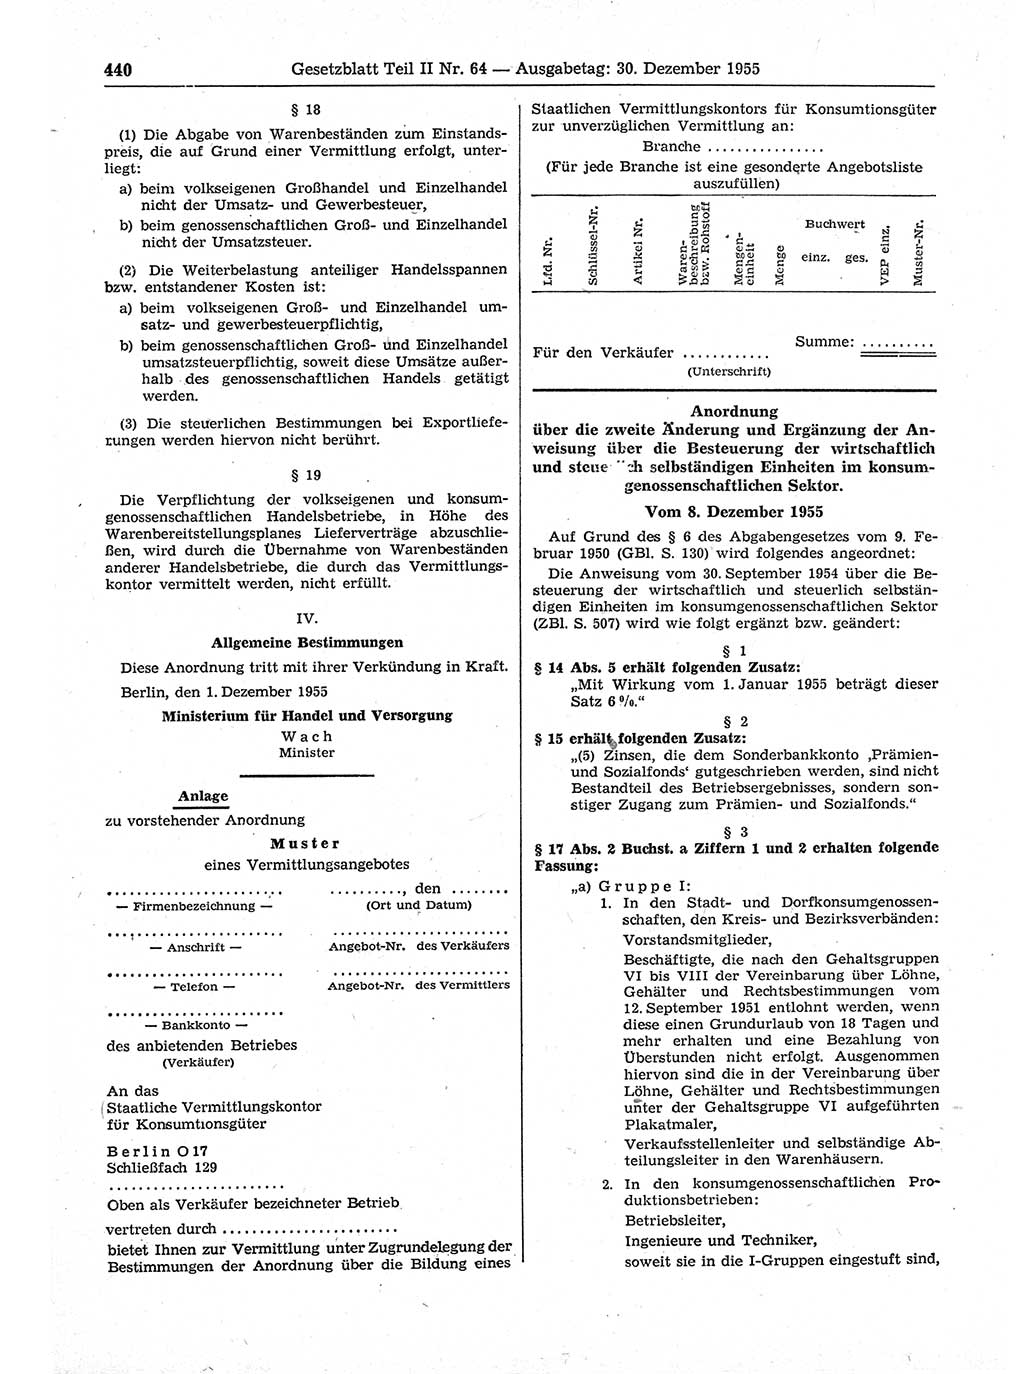 Gesetzblatt (GBl.) der Deutschen Demokratischen Republik (DDR) Teil ⅠⅠ 1955, Seite 440 (GBl. DDR ⅠⅠ 1955, S. 440)